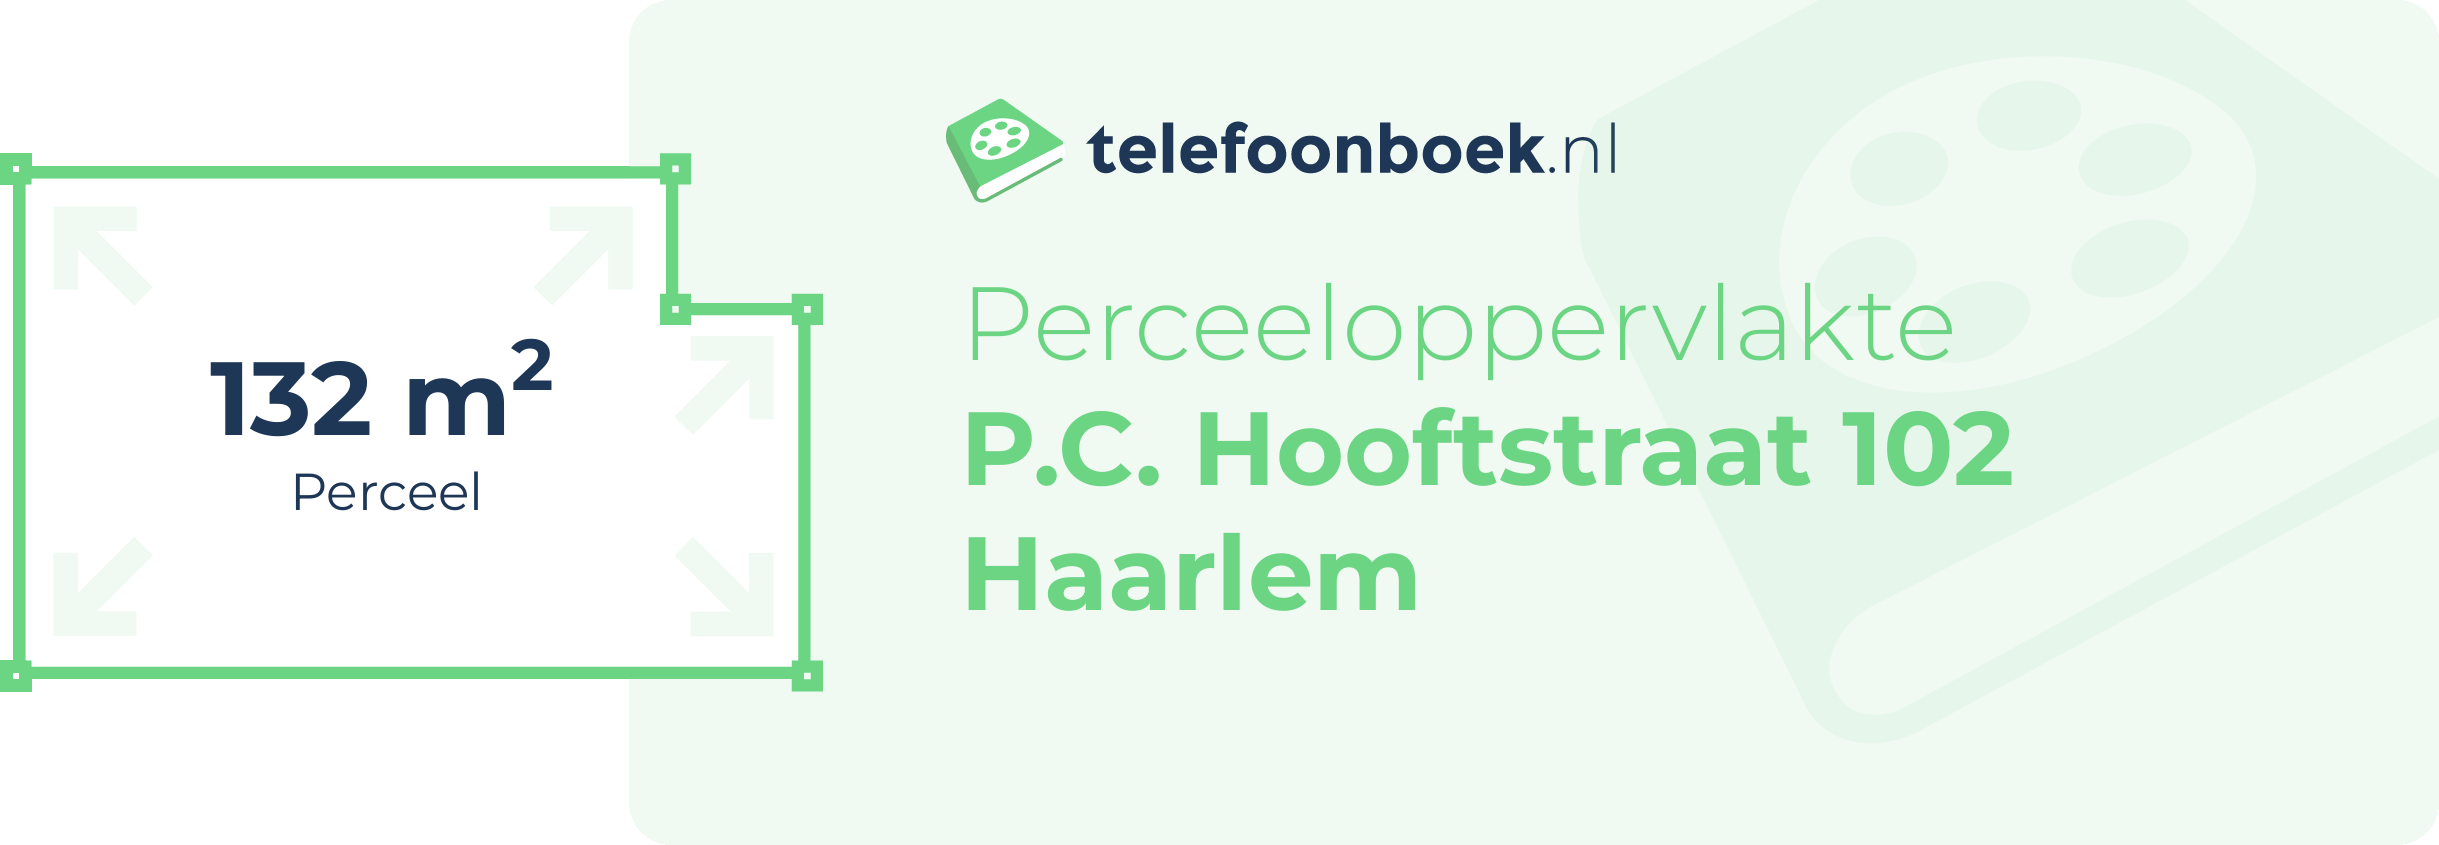 Perceeloppervlakte P.C. Hooftstraat 102 Haarlem